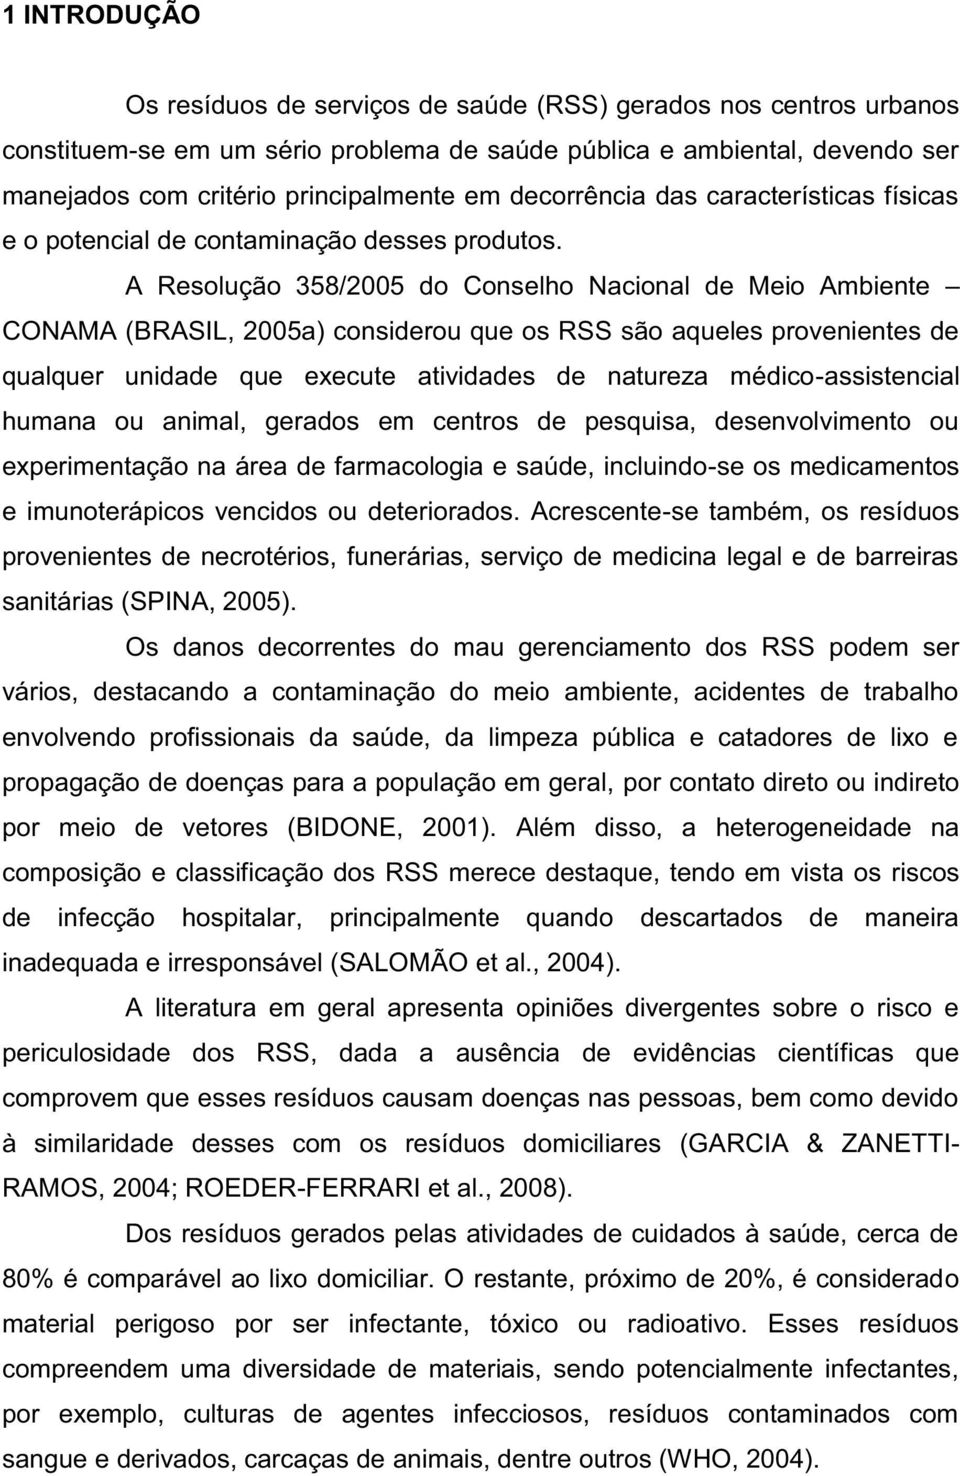 A Resolução 358/2005 do Conselho Nacional de Meio Ambiente CONAMA (BRASIL, 2005a) considerou que os RSS são aqueles provenientes de qualquer unidade que execute atividades de natureza